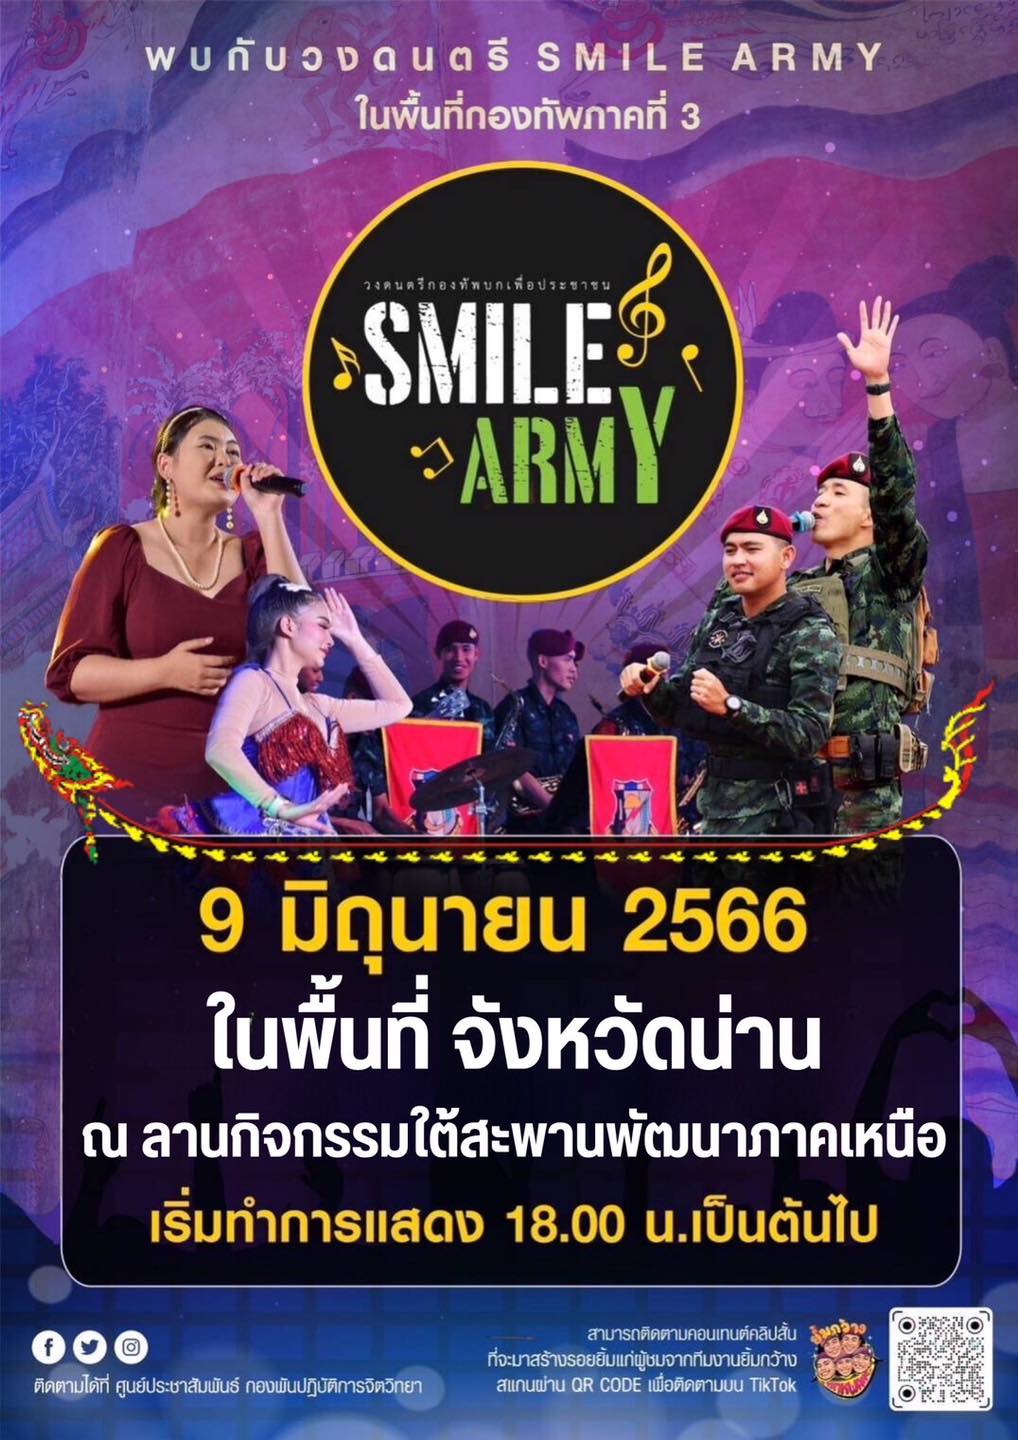 📣 คอนเสิร์ต "รักไทย หัวใจ 4 ภาค"   🎤✨ ขอเชิญชวนพี่น้องประชาชนคนน่านทุกท่านร่วมรับชมการแสดงคอนเสิร์ต "รักไทย หัวใจ 4 ภาค" 🕺💃 โดยวงดนตรี SmileArmy (วงดนตรีกองทัพบกเพื่อประชาชน)  👉🏻ในวันศุกร์ ที่ 9 มิถุนายน 2566 พบกันที่ ณ ลานกิจกรรมใต้สะพานพัฒนาภาคเหนือ 🔥ชมฟรีตั้งแต่เวลา 18.00 น.เป็นต้นไป  🍿ในงานมีการจำหน่ายอาหารจากร้านค้าต่างๆมากมาย #มณฑลทหารบกที่38 #ค่ายสุริยพงษ์ #คอนเสิร์ตรักไทยหัวใจ4ภาค #กองทัพบกเพื่อประชาชน